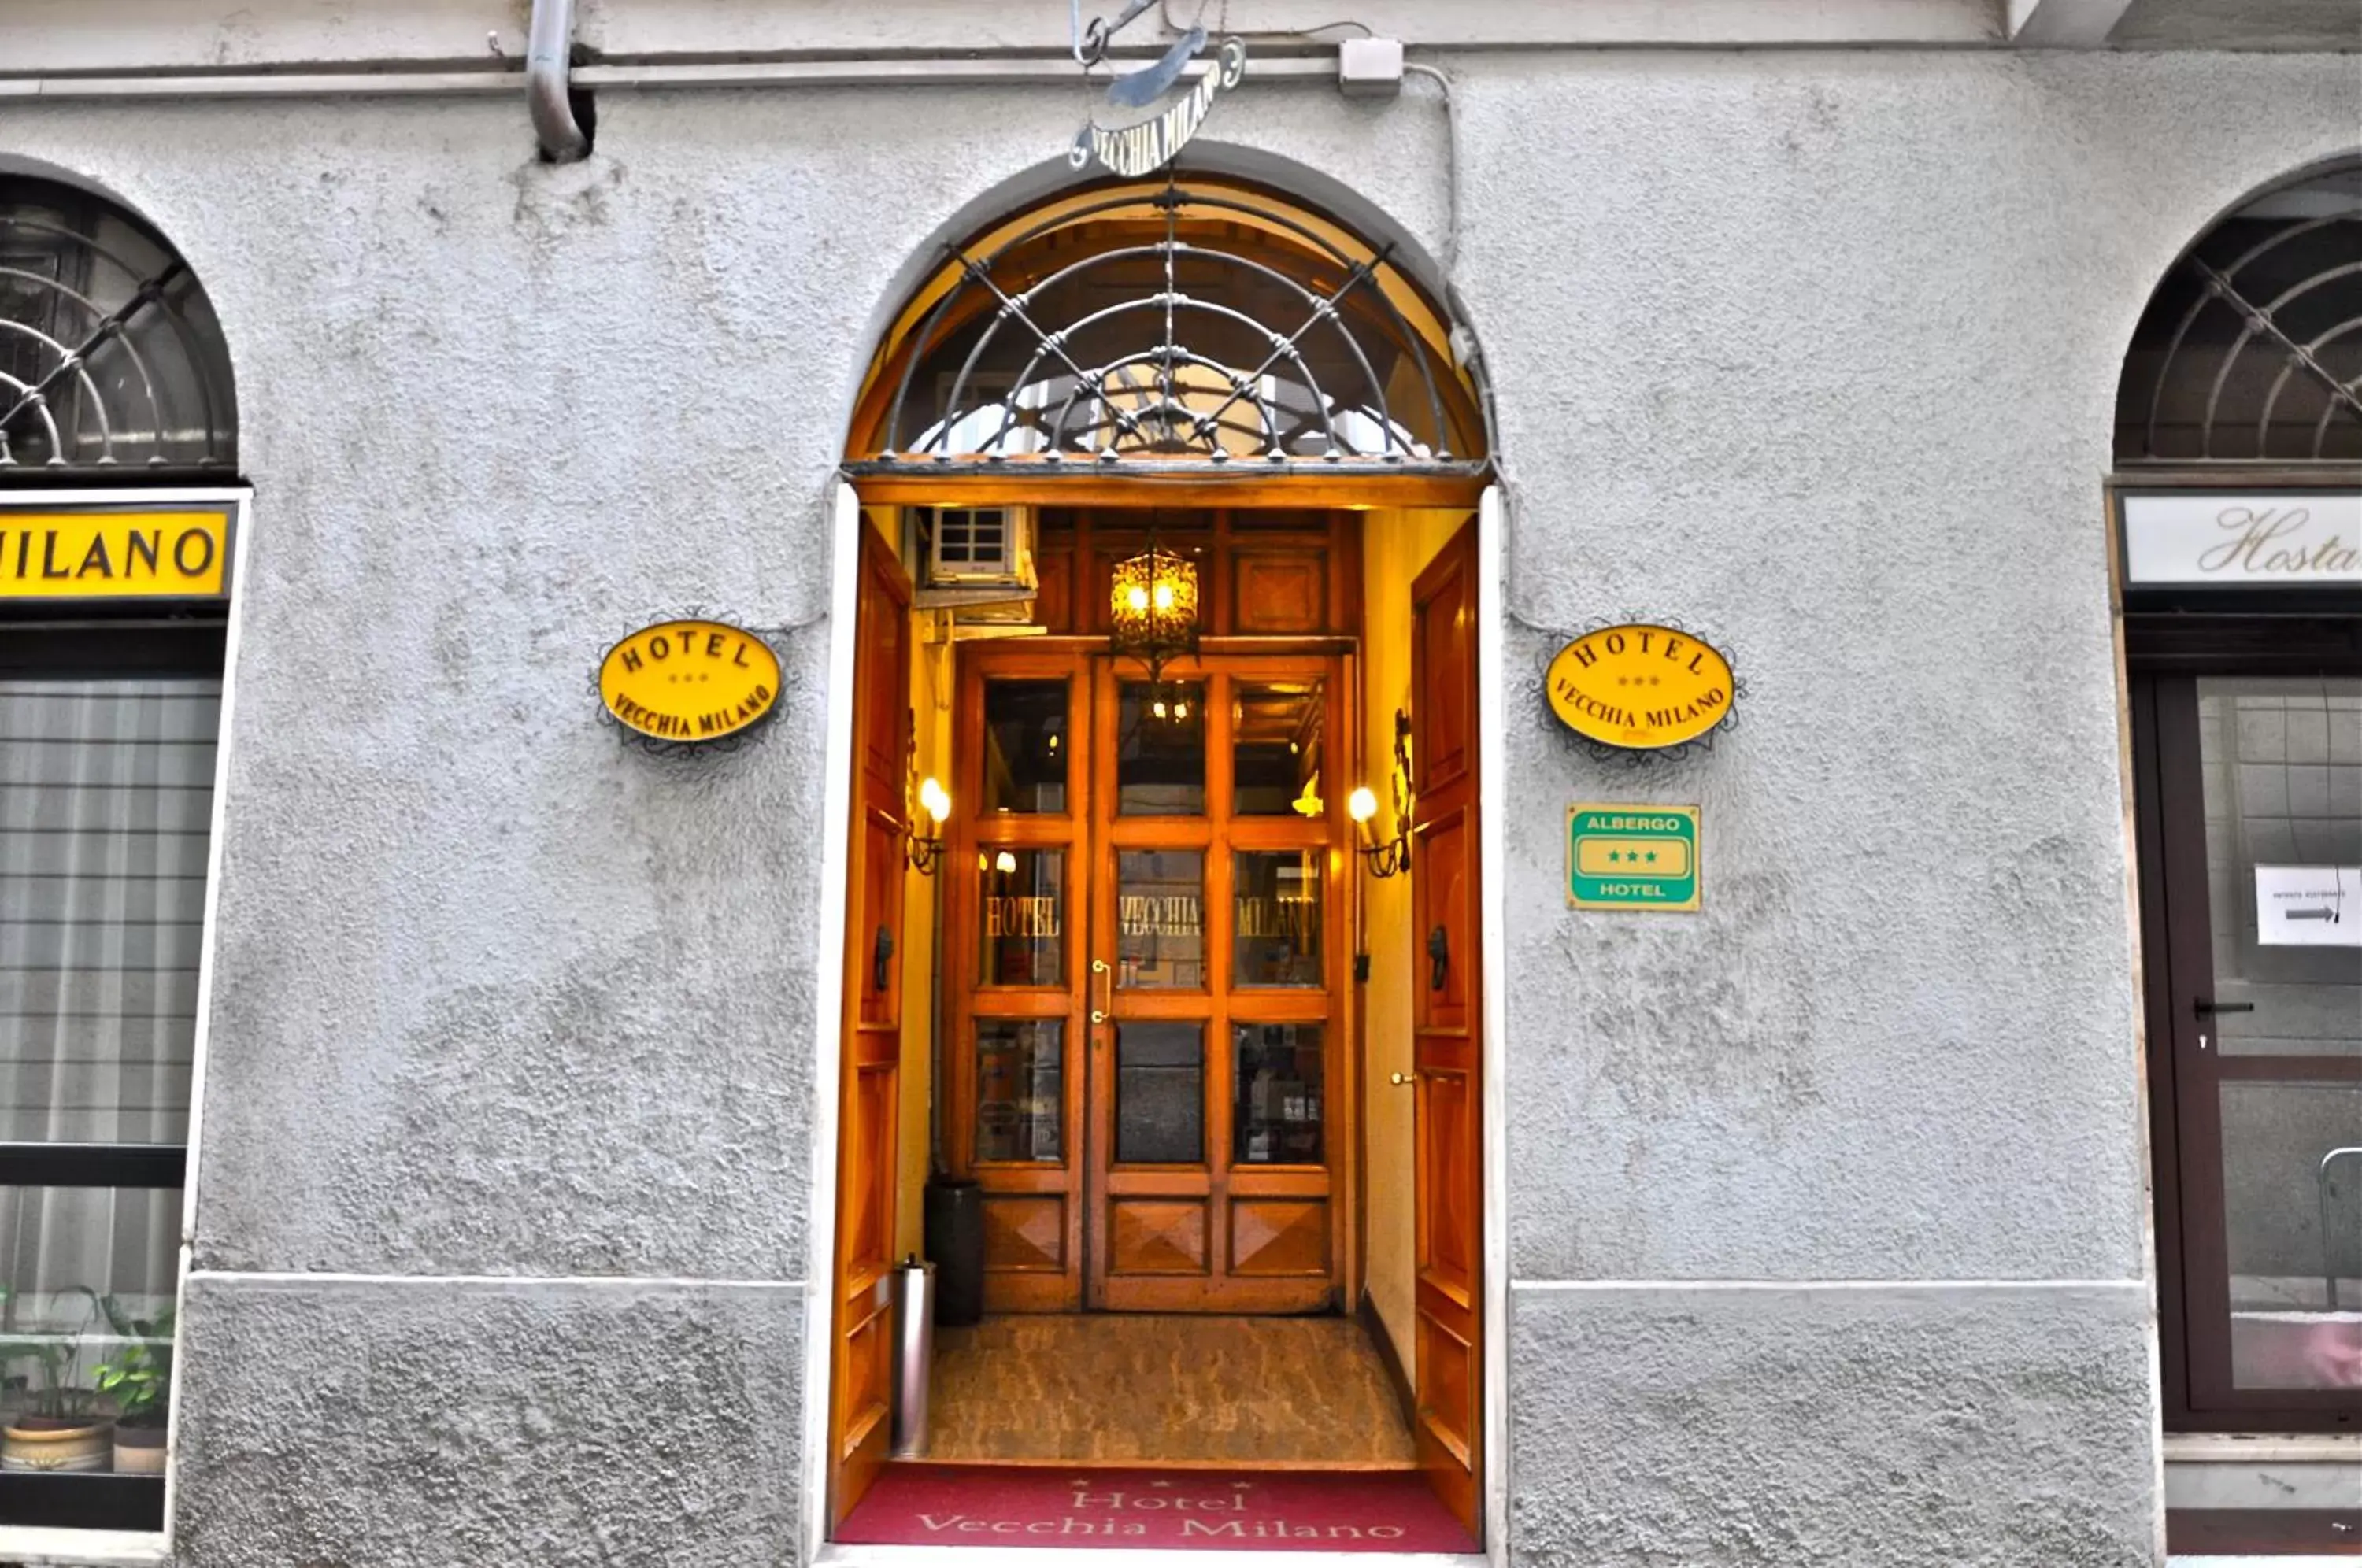 Facade/Entrance in Hotel Vecchia Milano